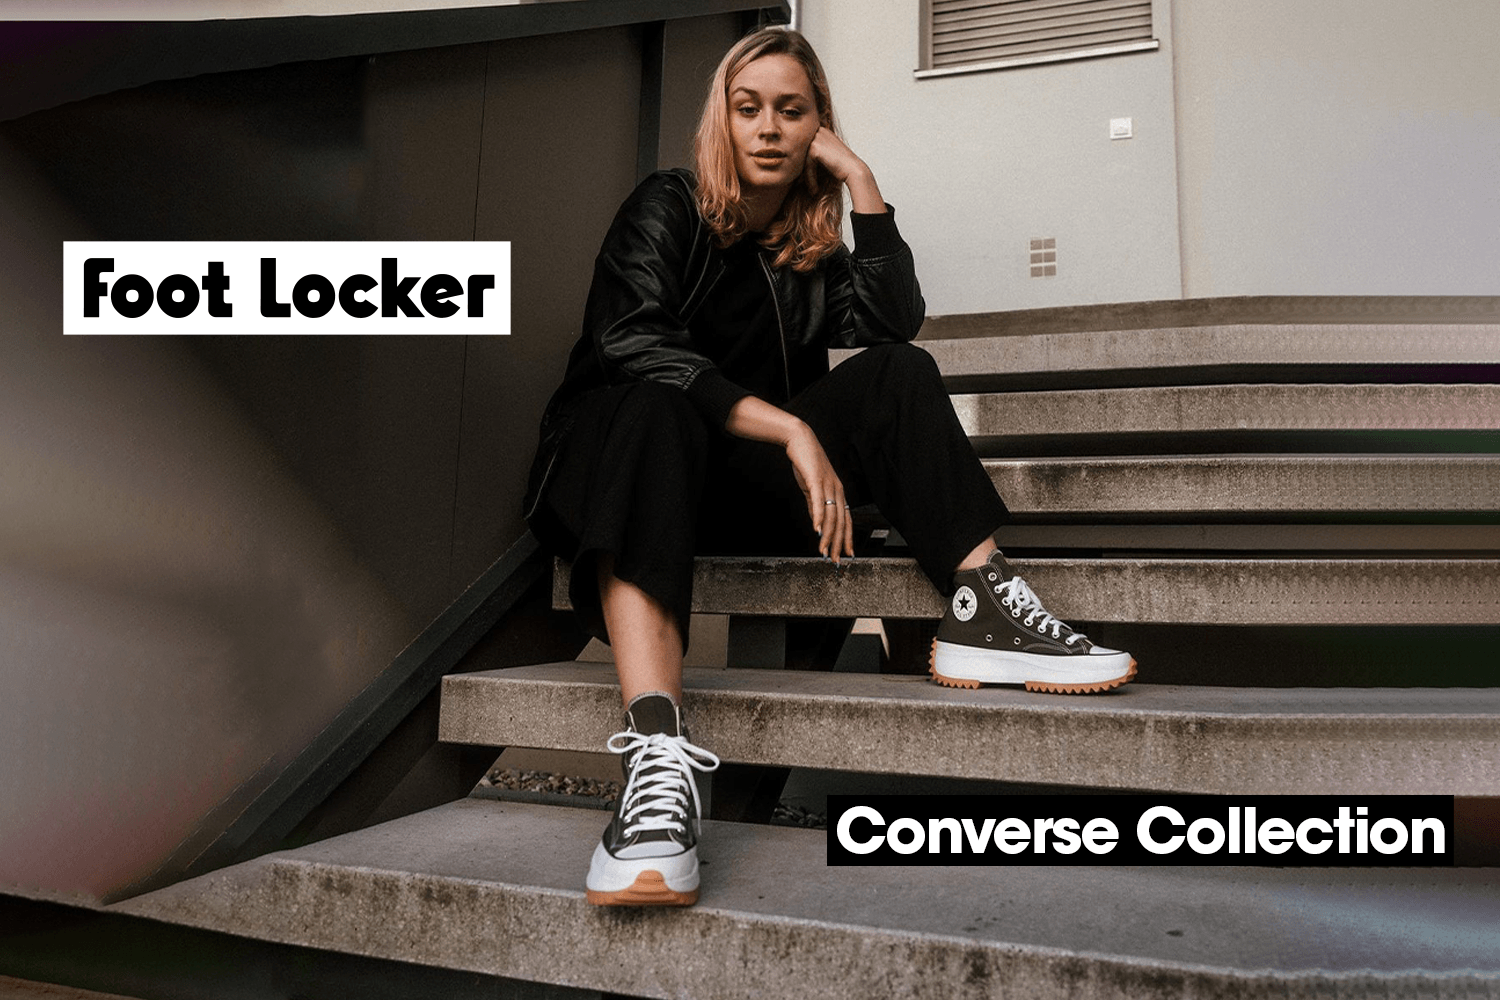 Shop de Converse collectie bij Foot Locker